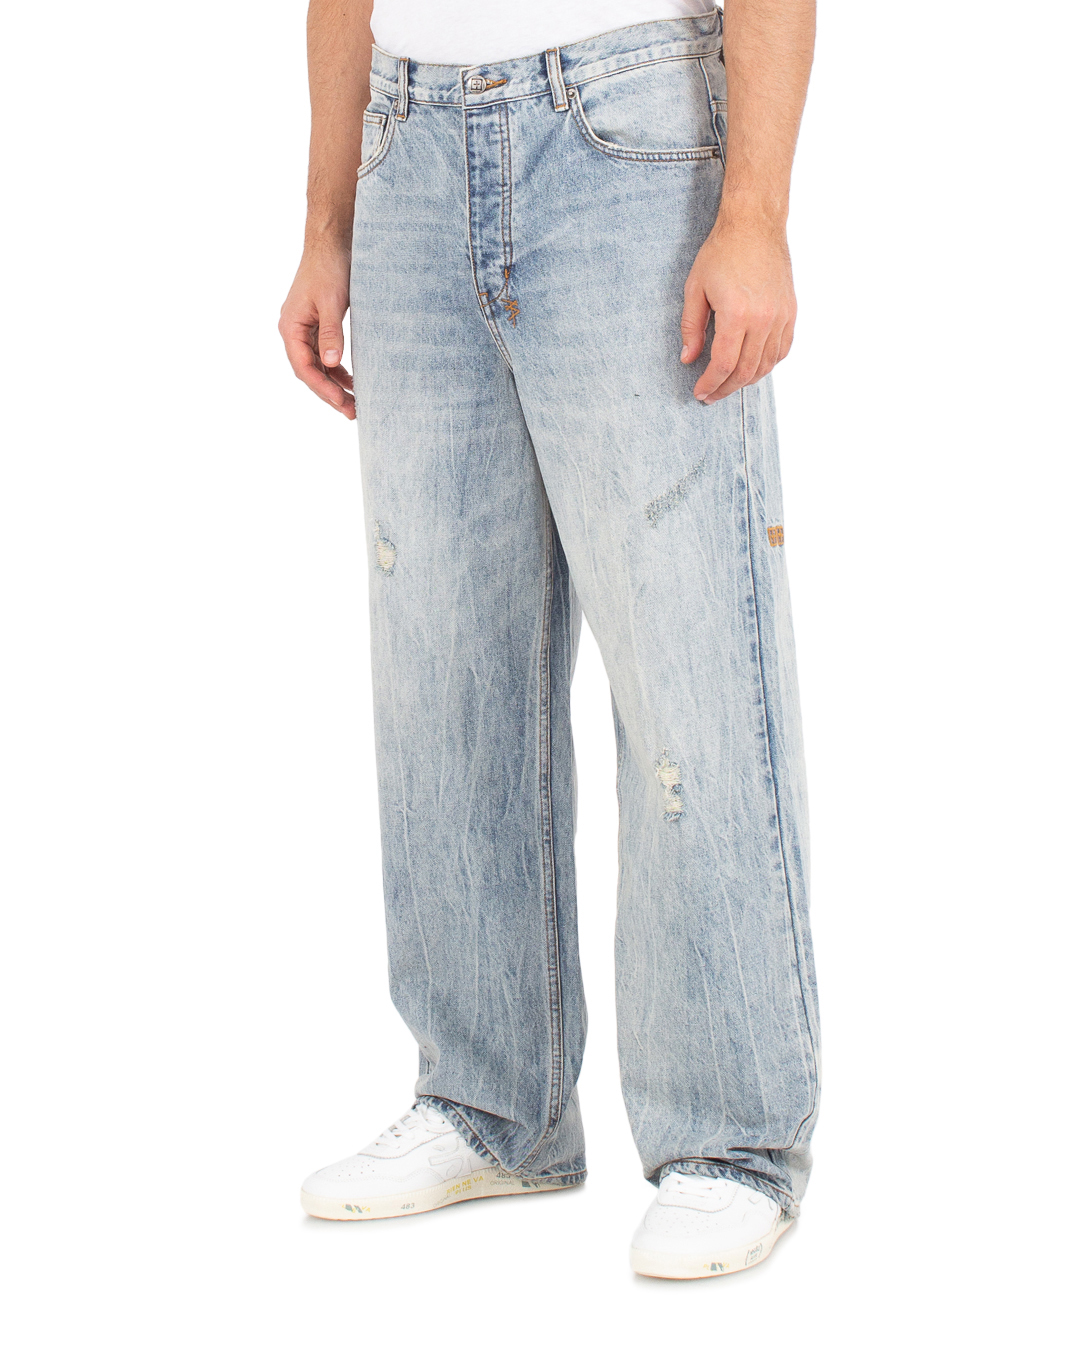 джинсы KSUBI MSP24DJ050 синий 36, размер 36 - фото 3